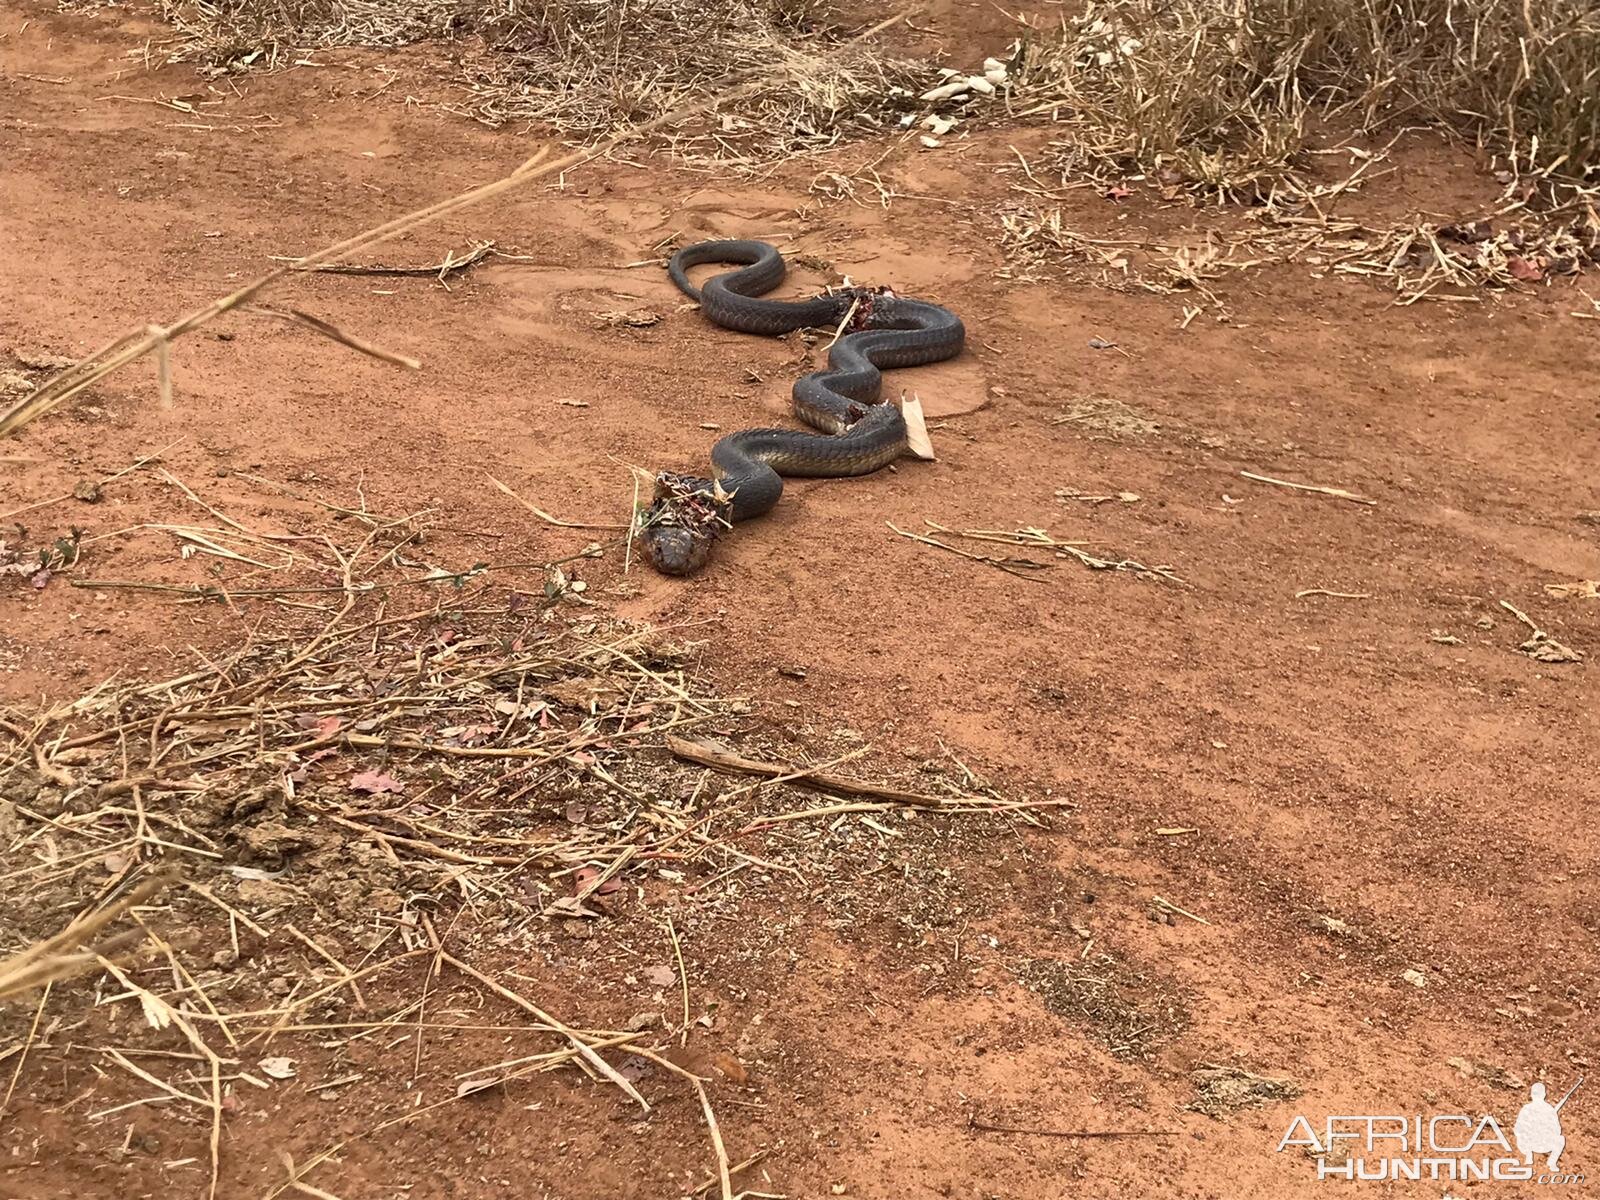 Spitting Cobra Snake Zimbabwe